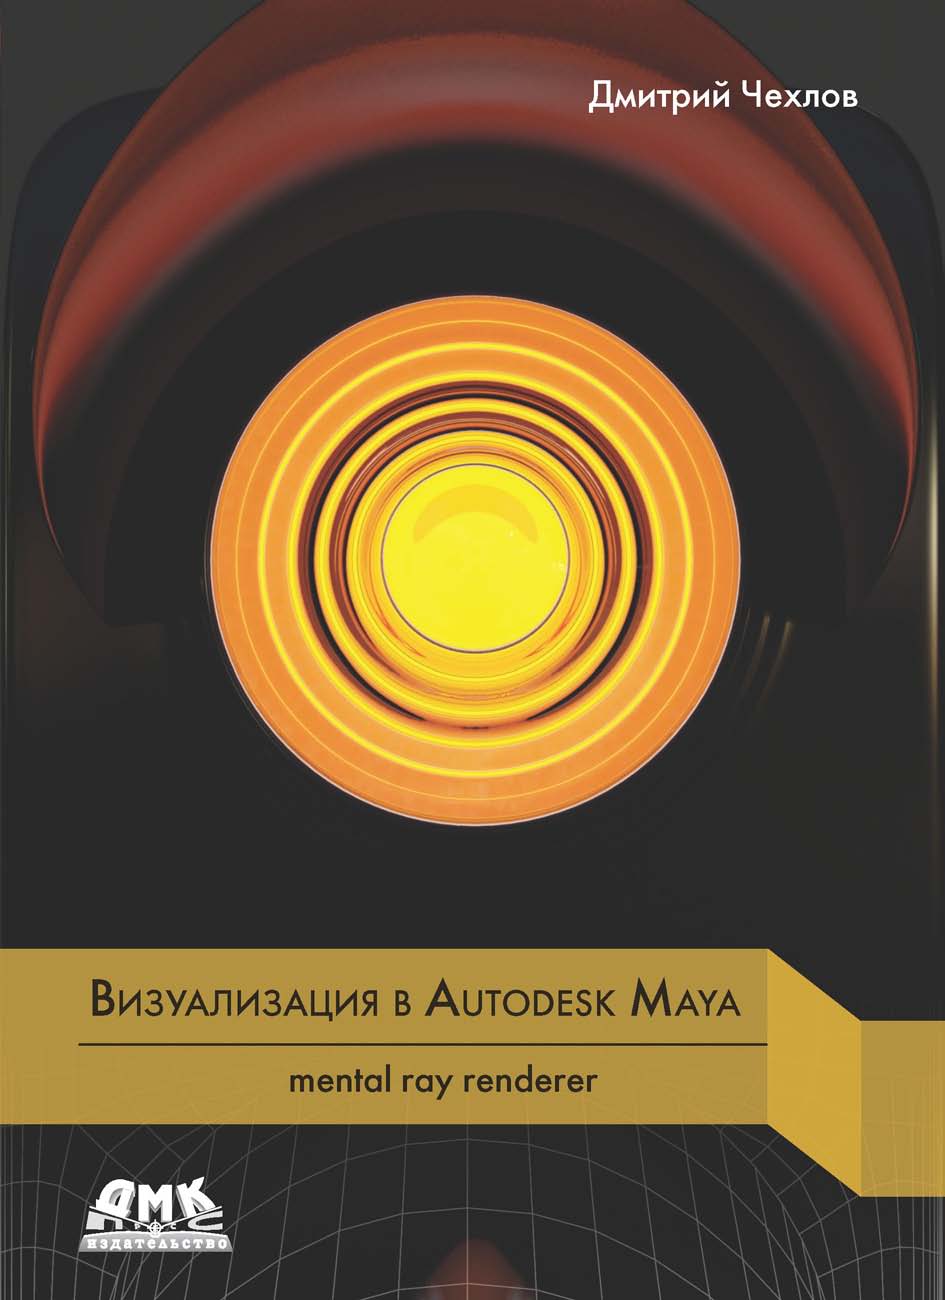 Книга  Визуализация в Autodesk Maya: mental ray renderer созданная Дмитрий Чехлов может относится к жанру программы. Стоимость электронной книги Визуализация в Autodesk Maya: mental ray renderer с идентификатором 43643099 составляет 590.00 руб.